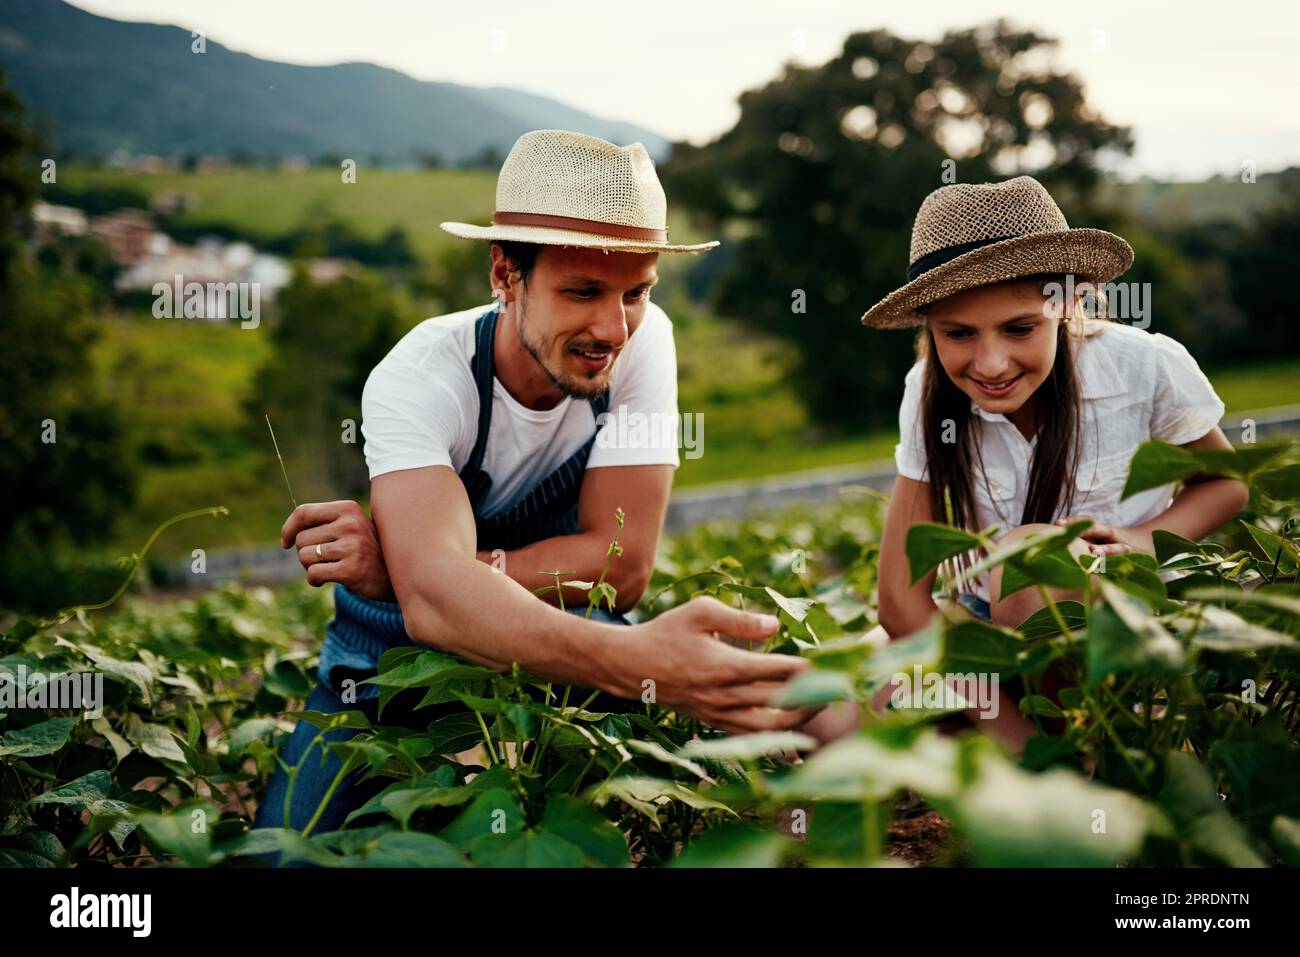 Transmitir su riqueza de conocimientos agrícolas. Plano completo de un hombre guapo y su hija joven trabajando en los campos de su granja. Foto de stock